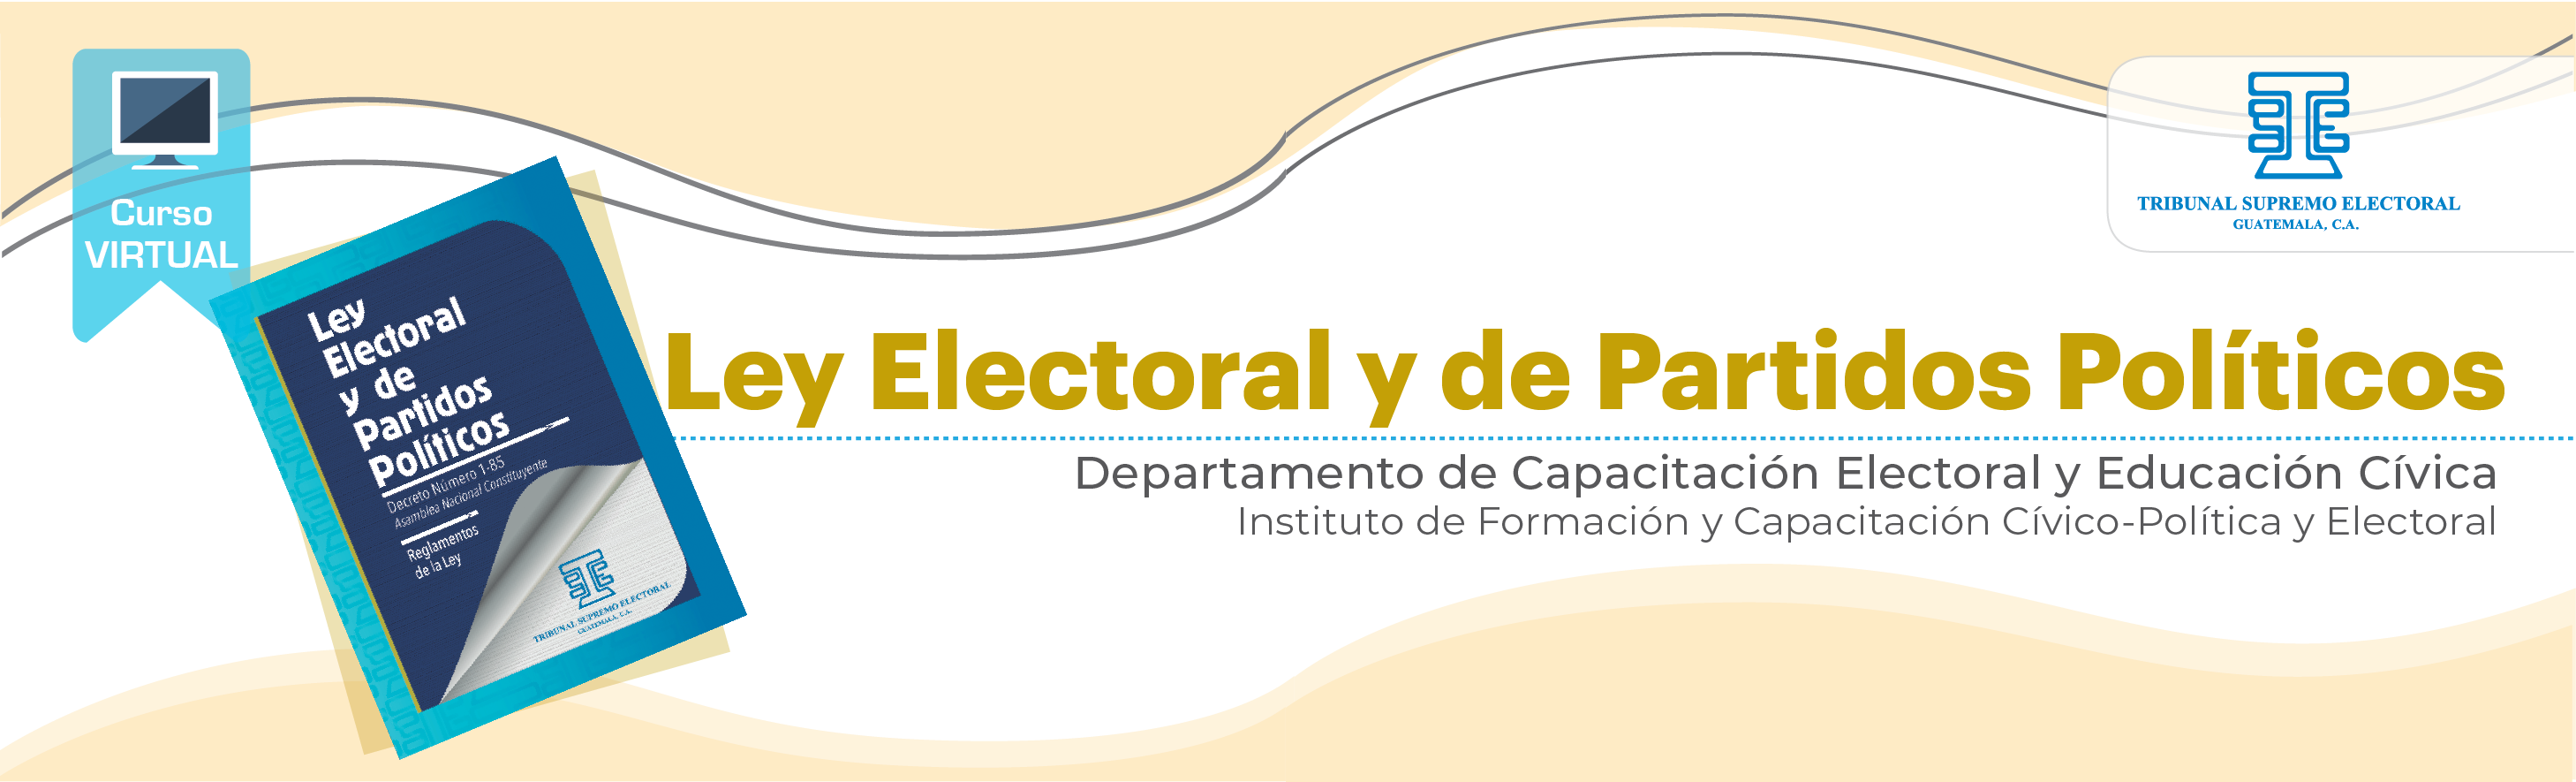 Ley Electoral y de Partidos Políticos 22 U